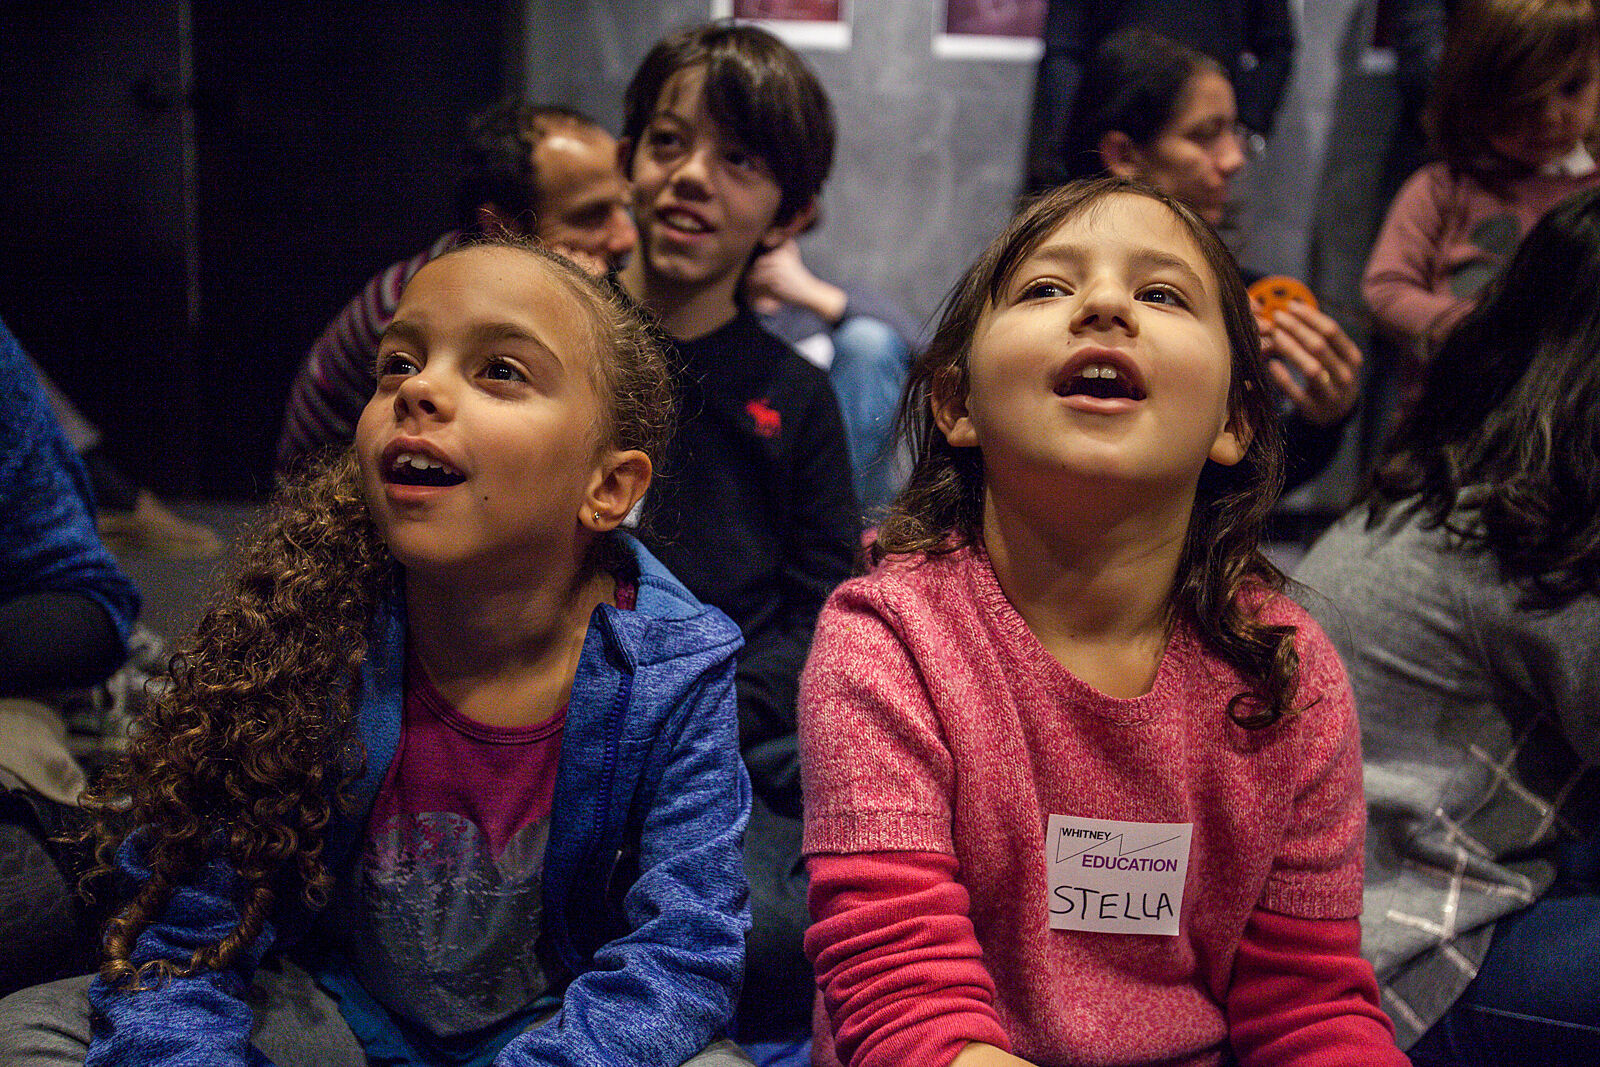 Children enjoy the exhibit